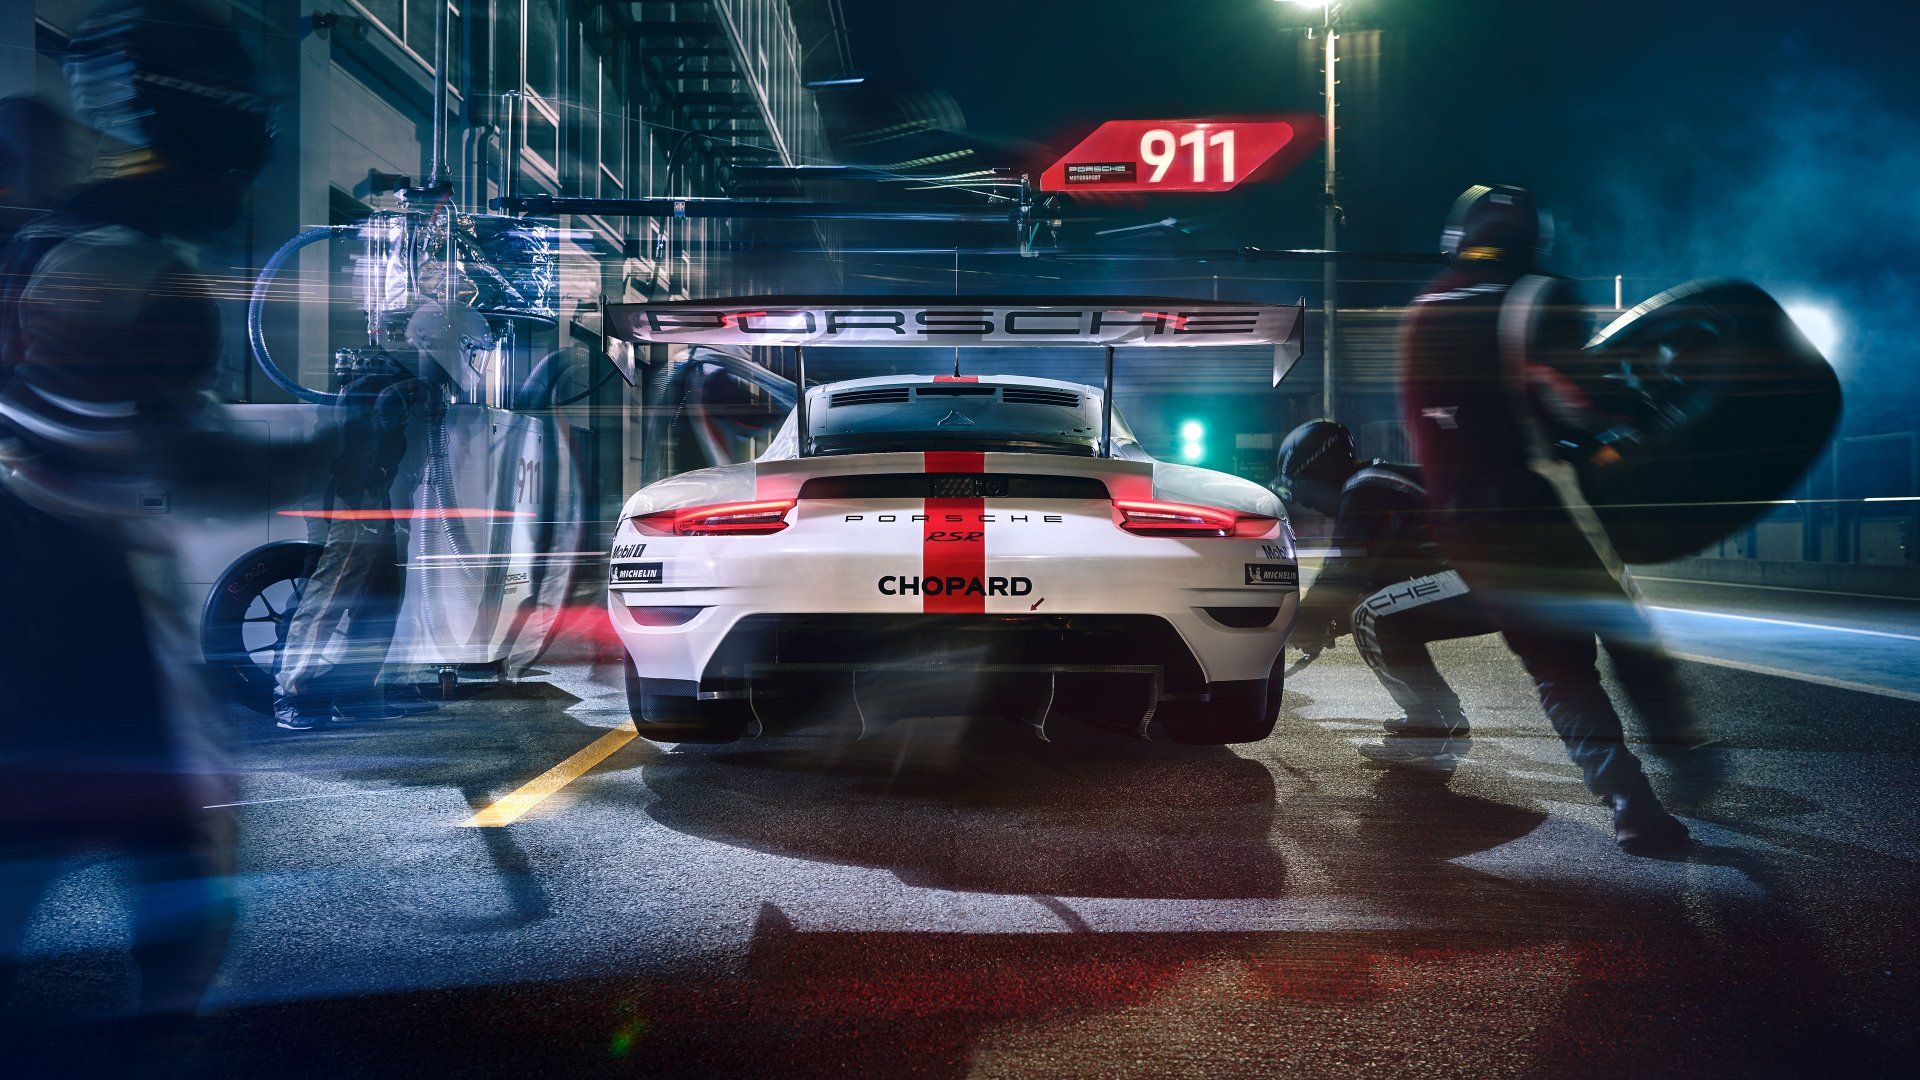 Porsche 911 RSR, Pit stop, Endurance racing, 4k Free deskk wallpaper, Ultra HD